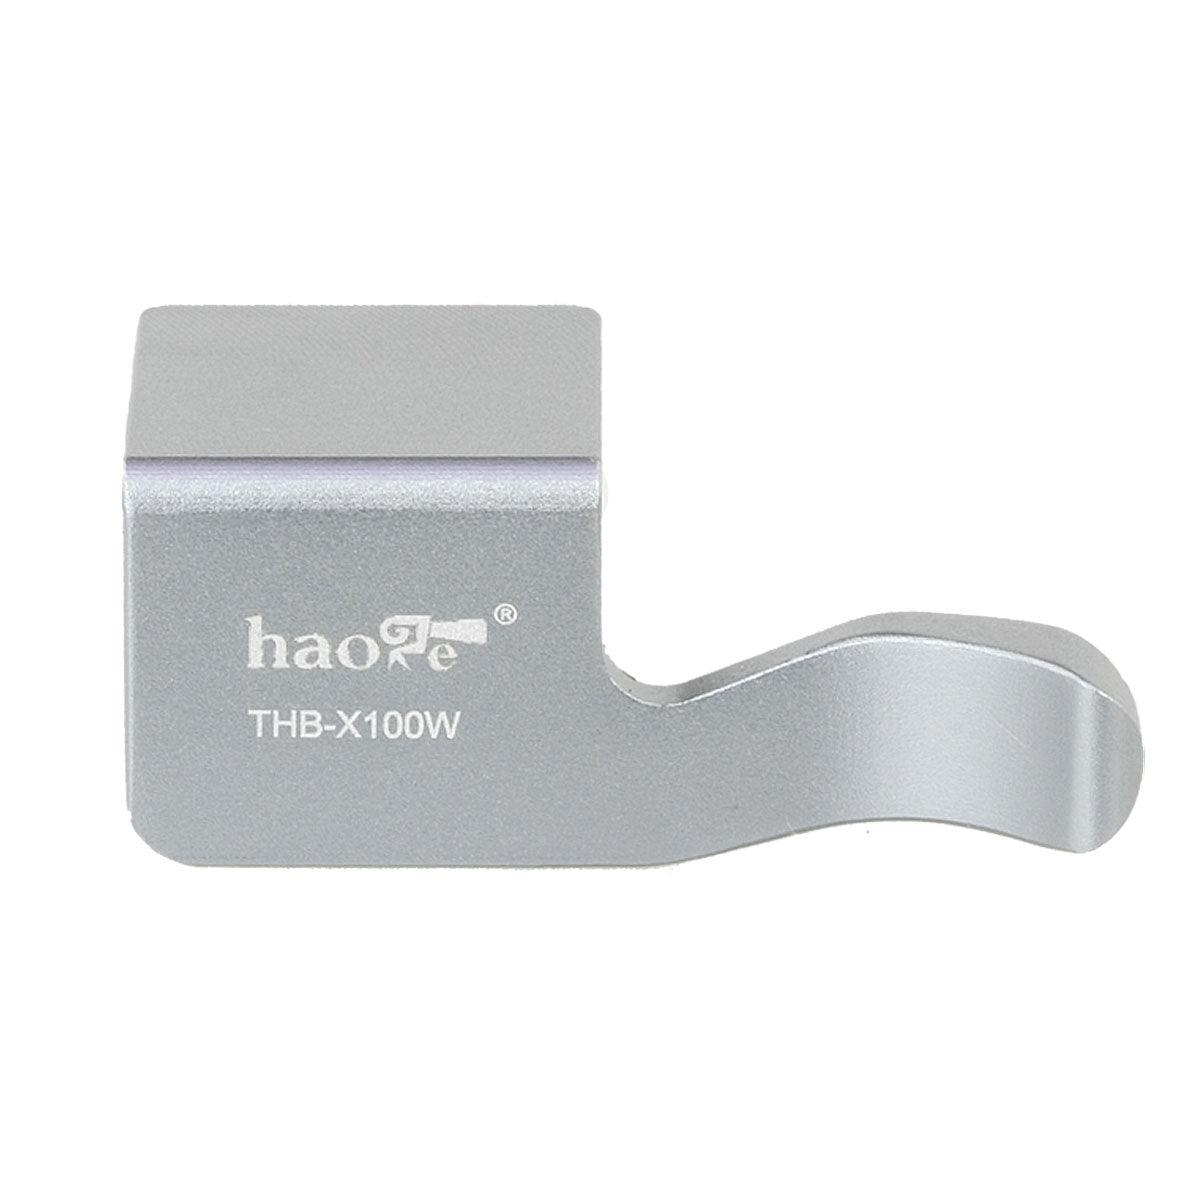 Haoge THB-X100W Hot Shoe Thumb Up Rest Grip For Fujifilm Fuji Finepix X100 X100S Camera Silver